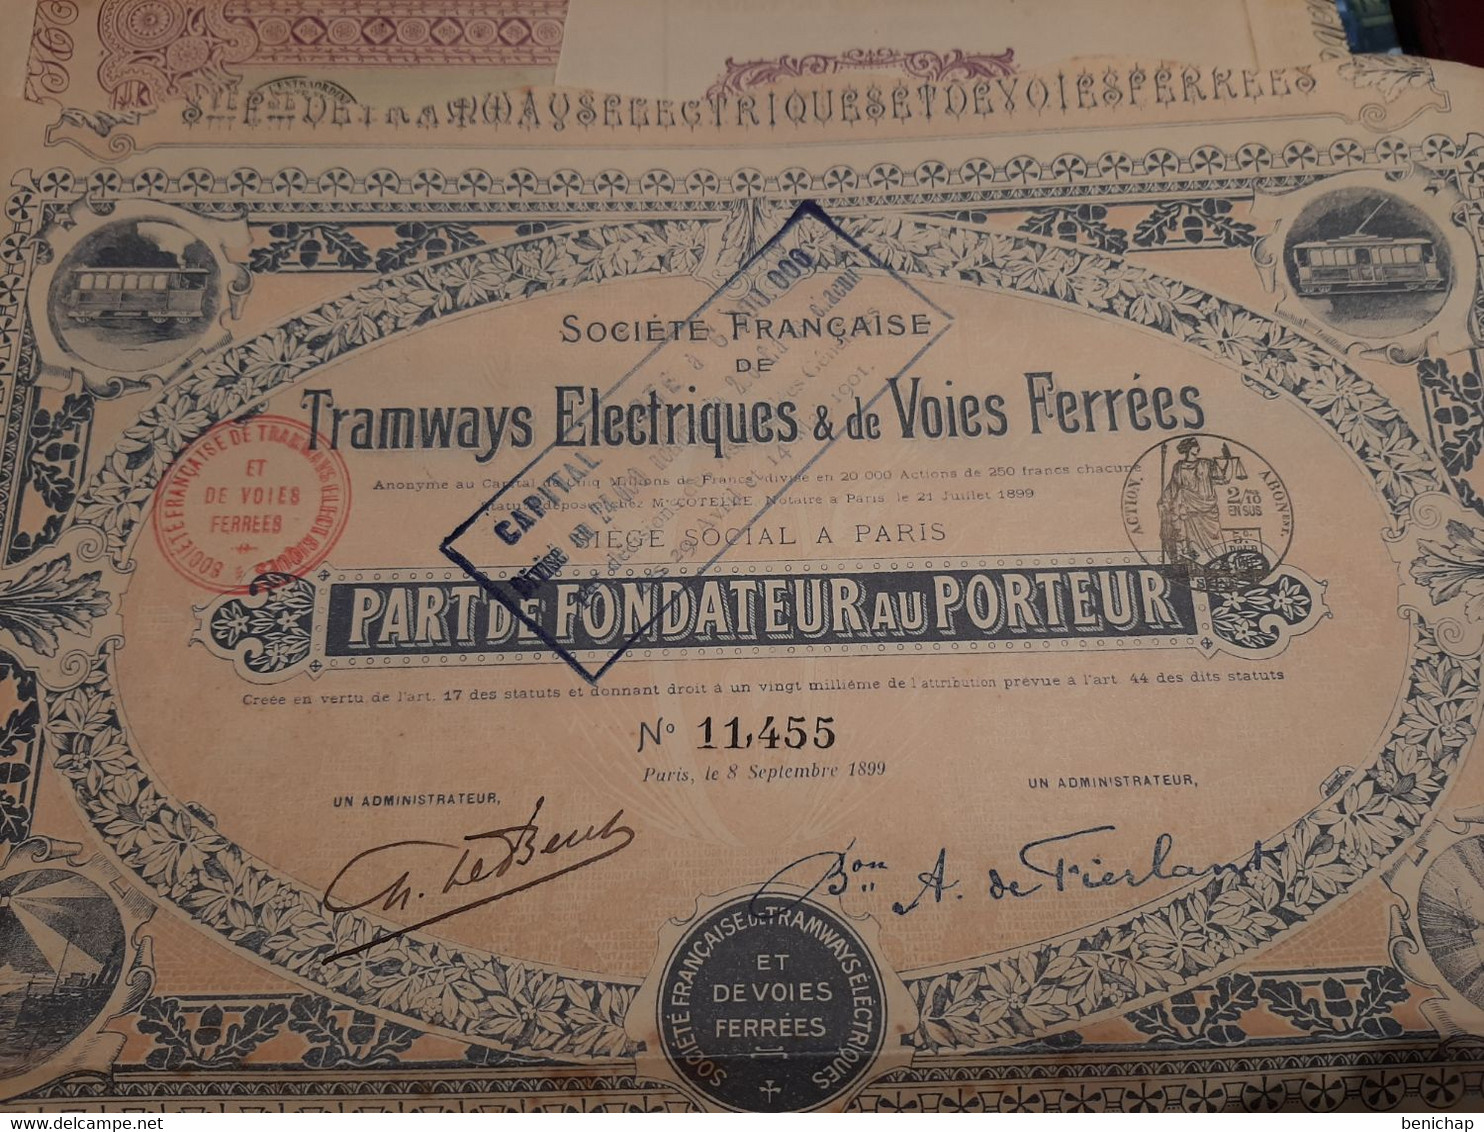 Société Française De Tramways Electriques & De Voies Ferrées - Part De Fondateur Au Porteur - Paris Septembre 1899. - Railway & Tramway